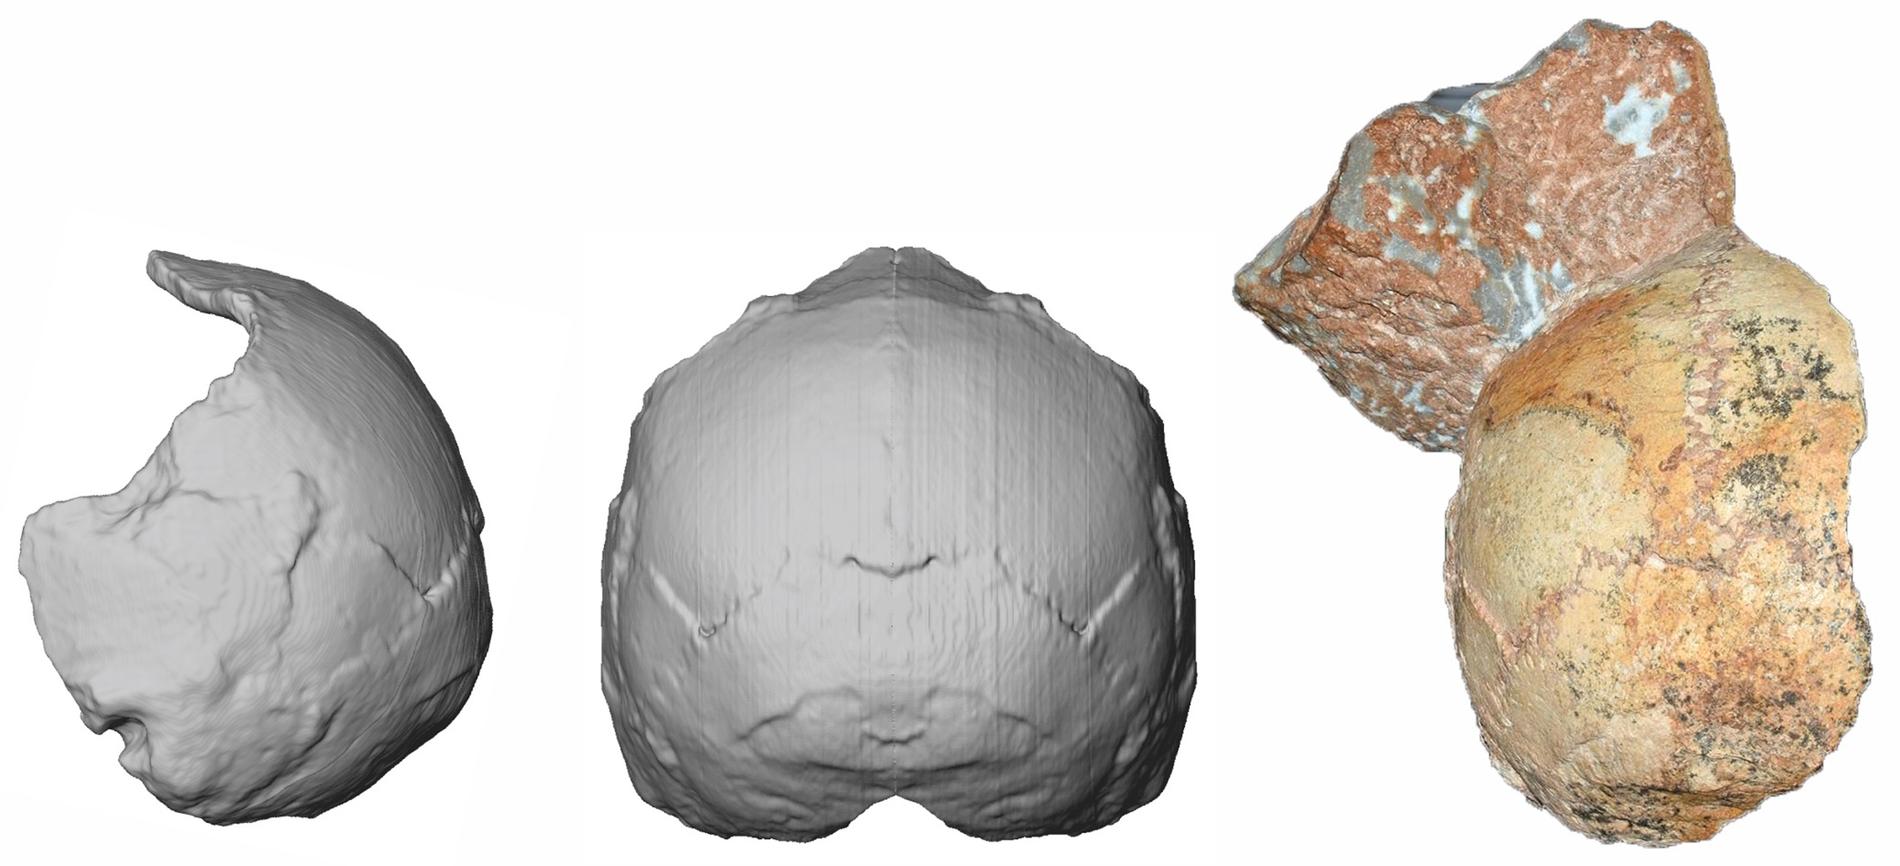 Ett kranium från grottan Apidima i Grekland som har visat sig tillhöra Homo sapiens och vara 210 000 år gammalt.